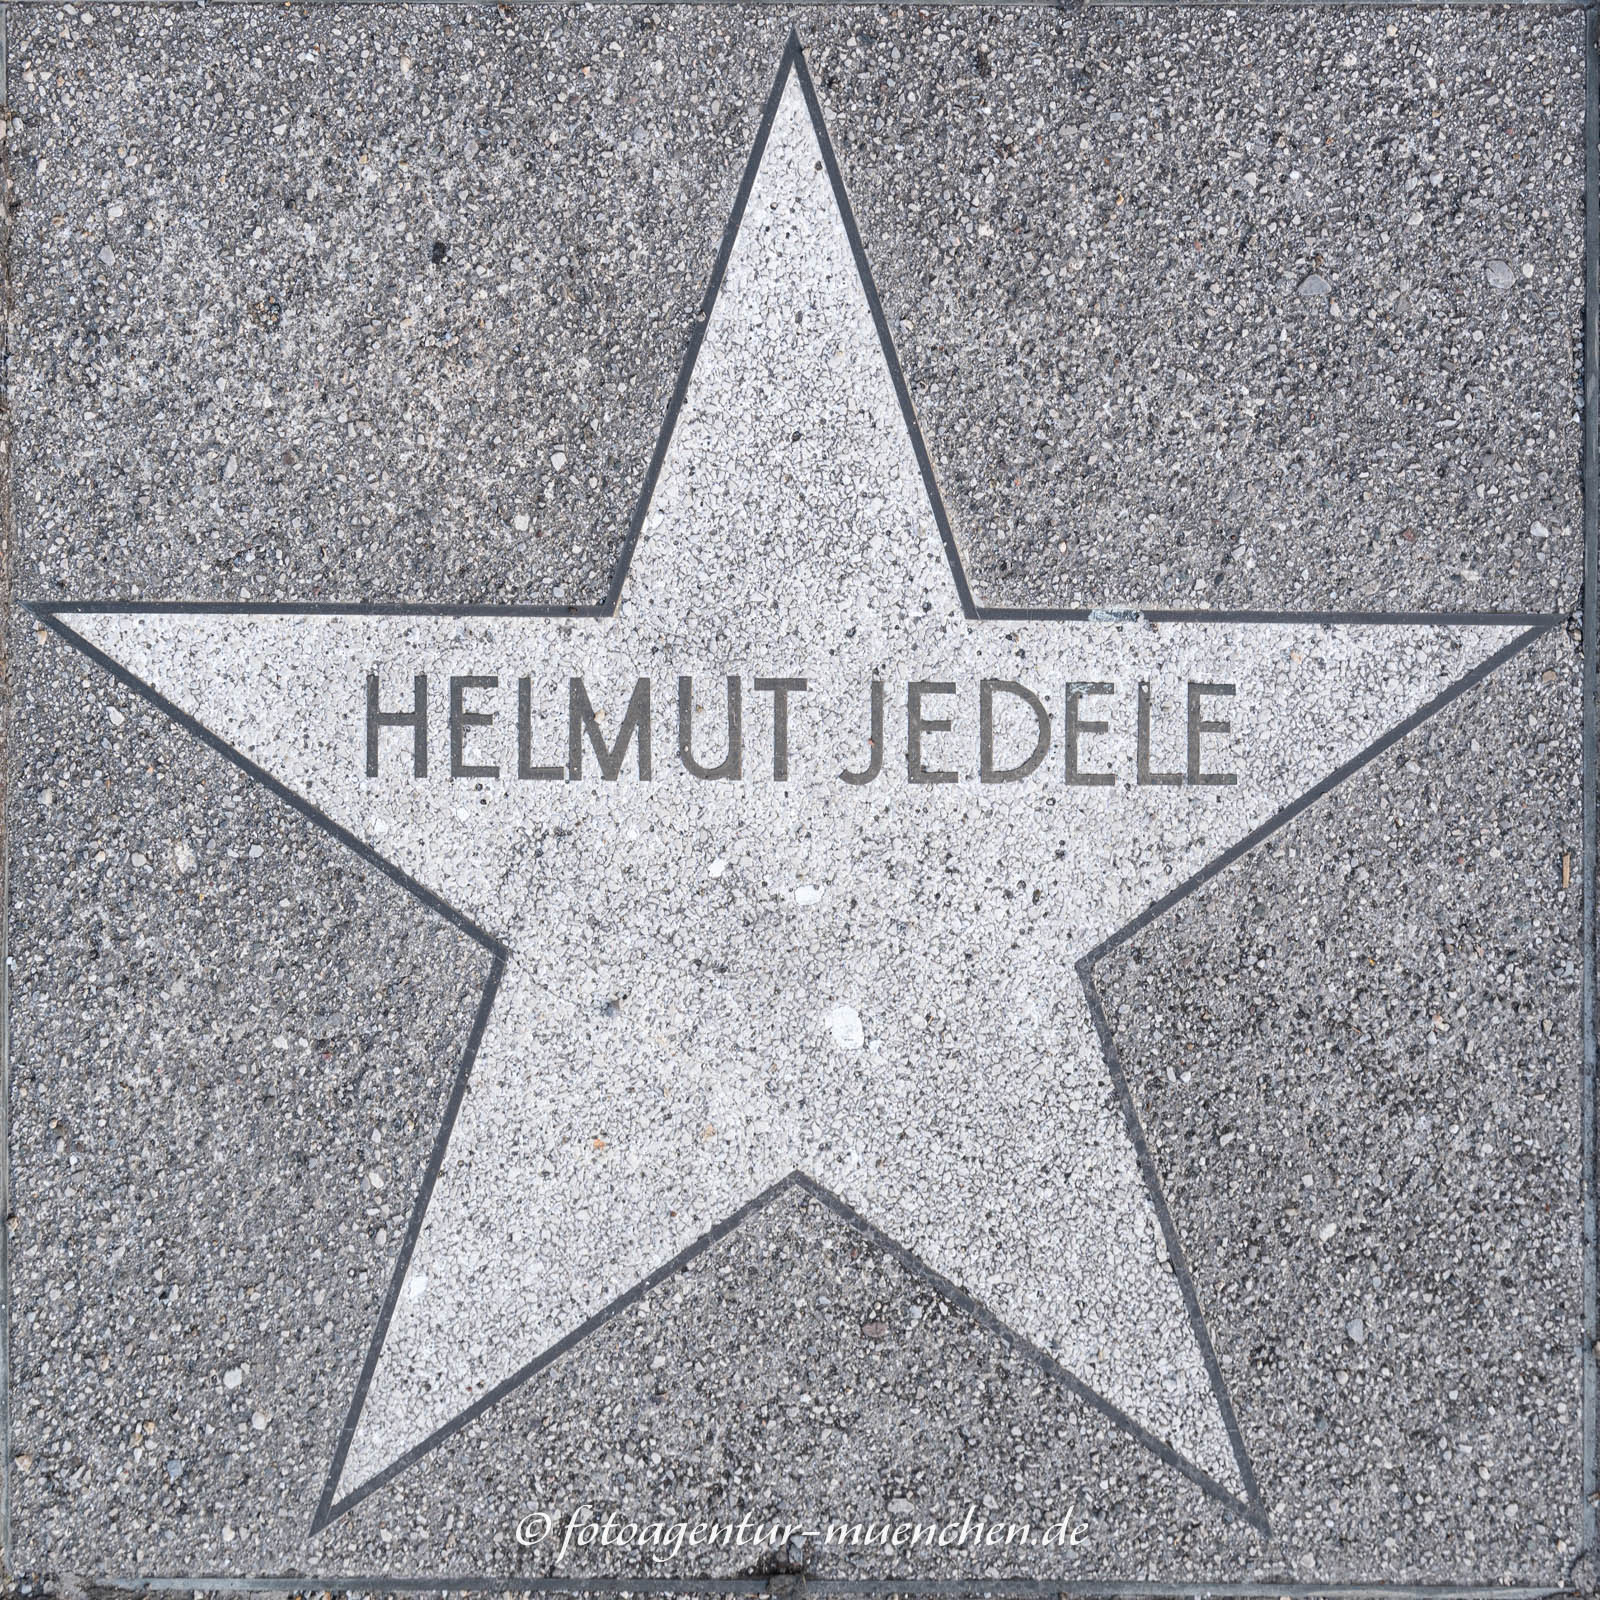 Stern - Helmut Jedele